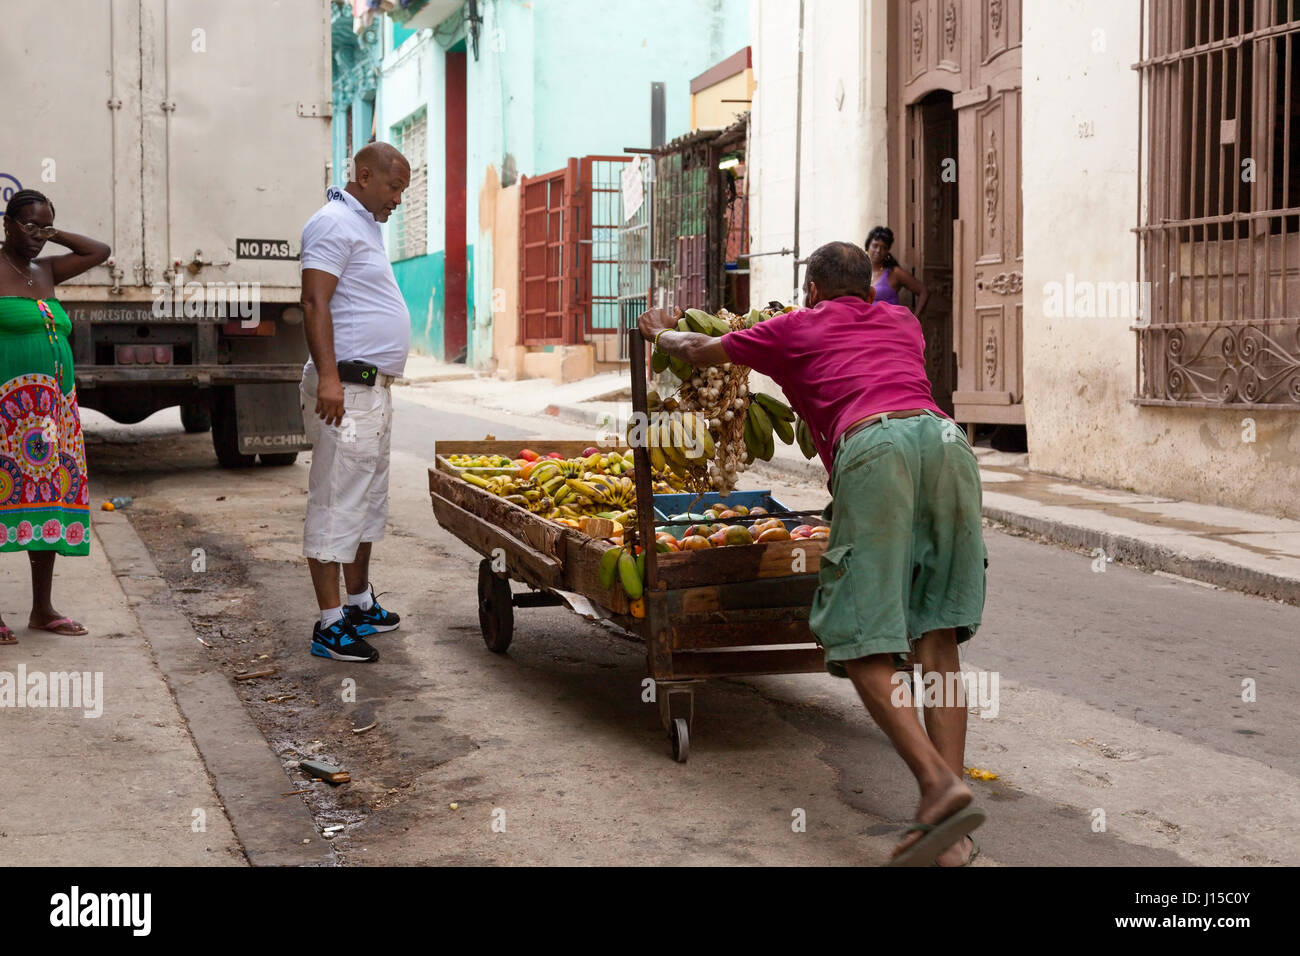 Un homme poussant un panier de fruits dans la rue à La Havane, Cuba. Banque D'Images